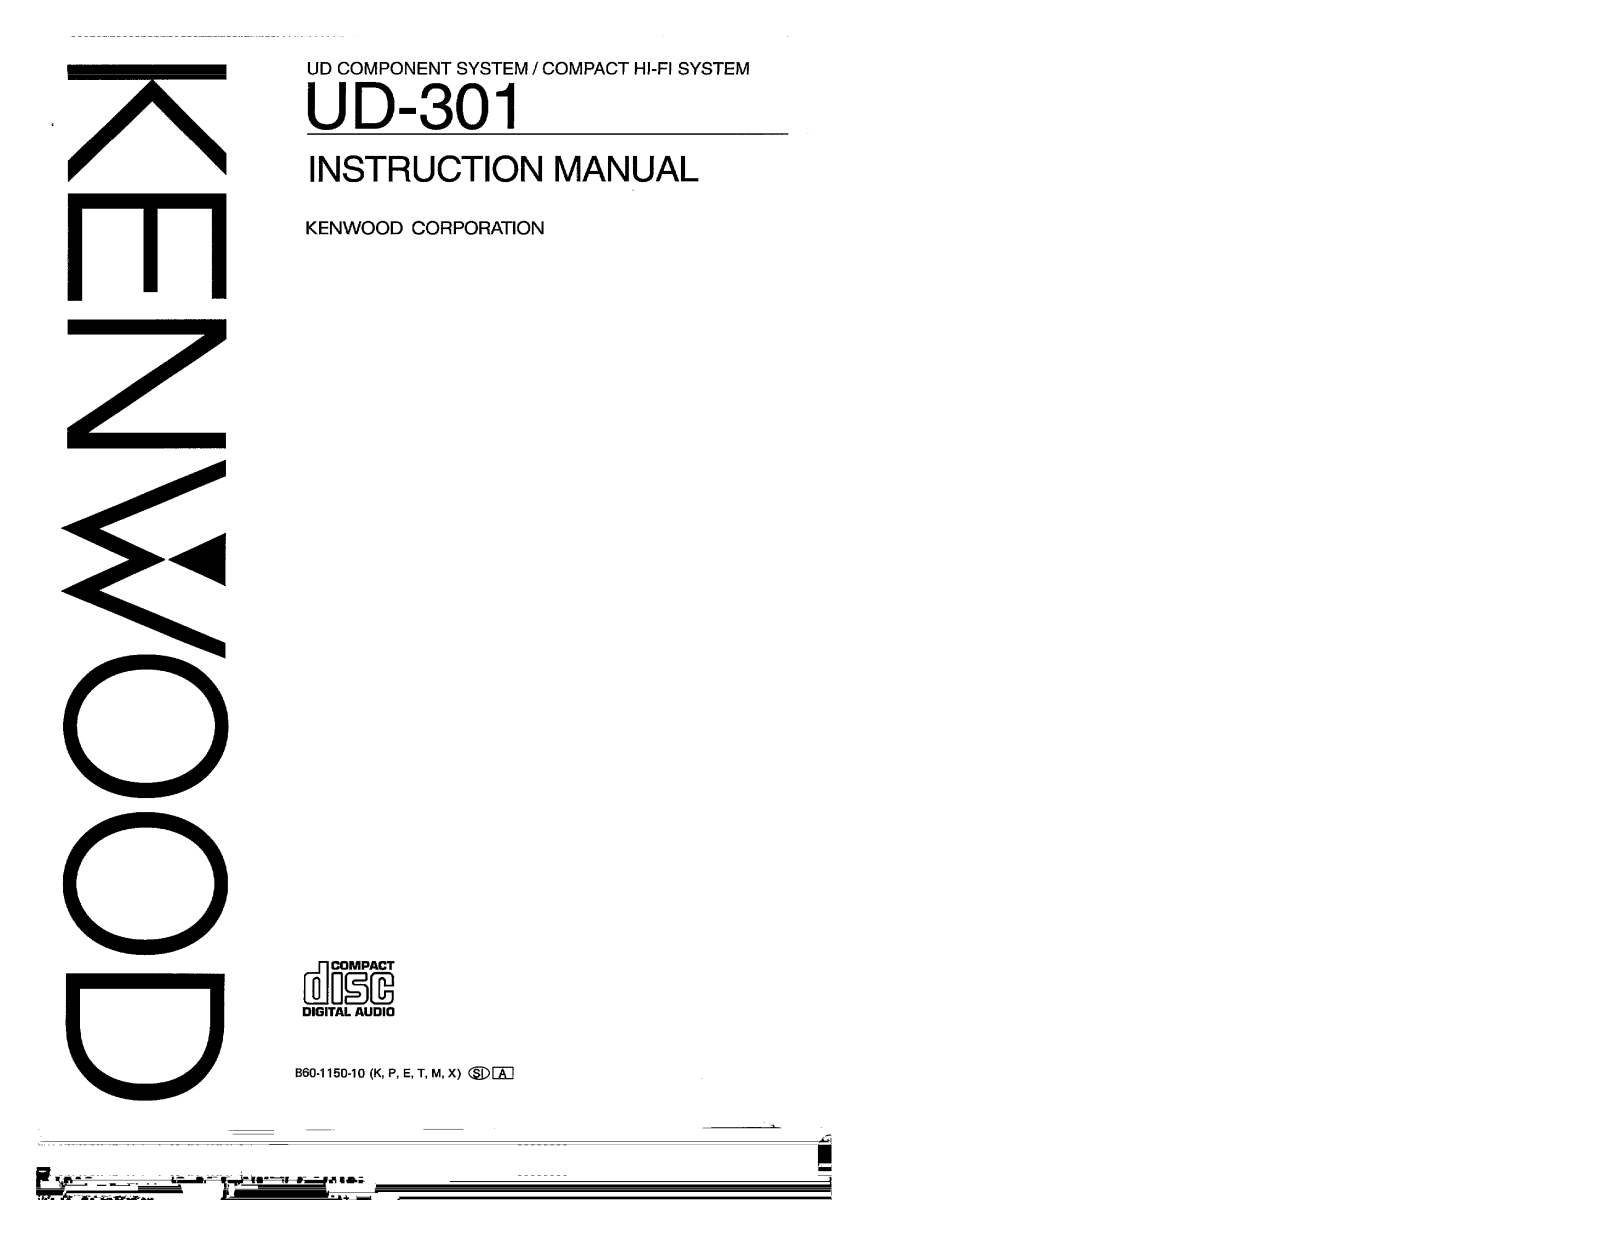 Kenwood X-B3, UD-301, LS-B3, A-B3L, A-B3 Owner's Manual